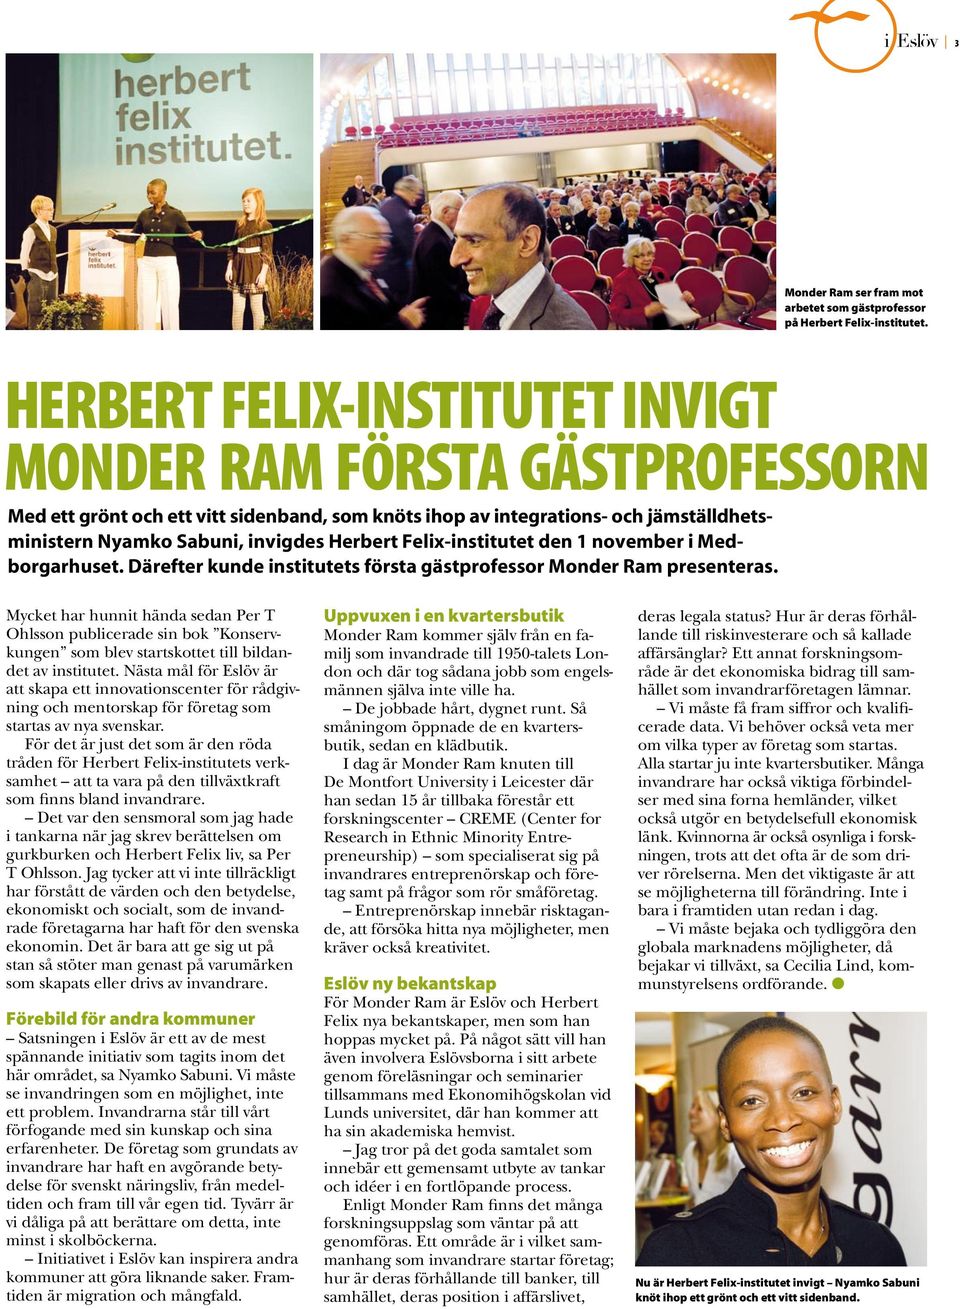 Felix-institutet den 1 november i Medborgarhuset. Därefter kunde institutets första gästprofessor Monder Ram presenteras.